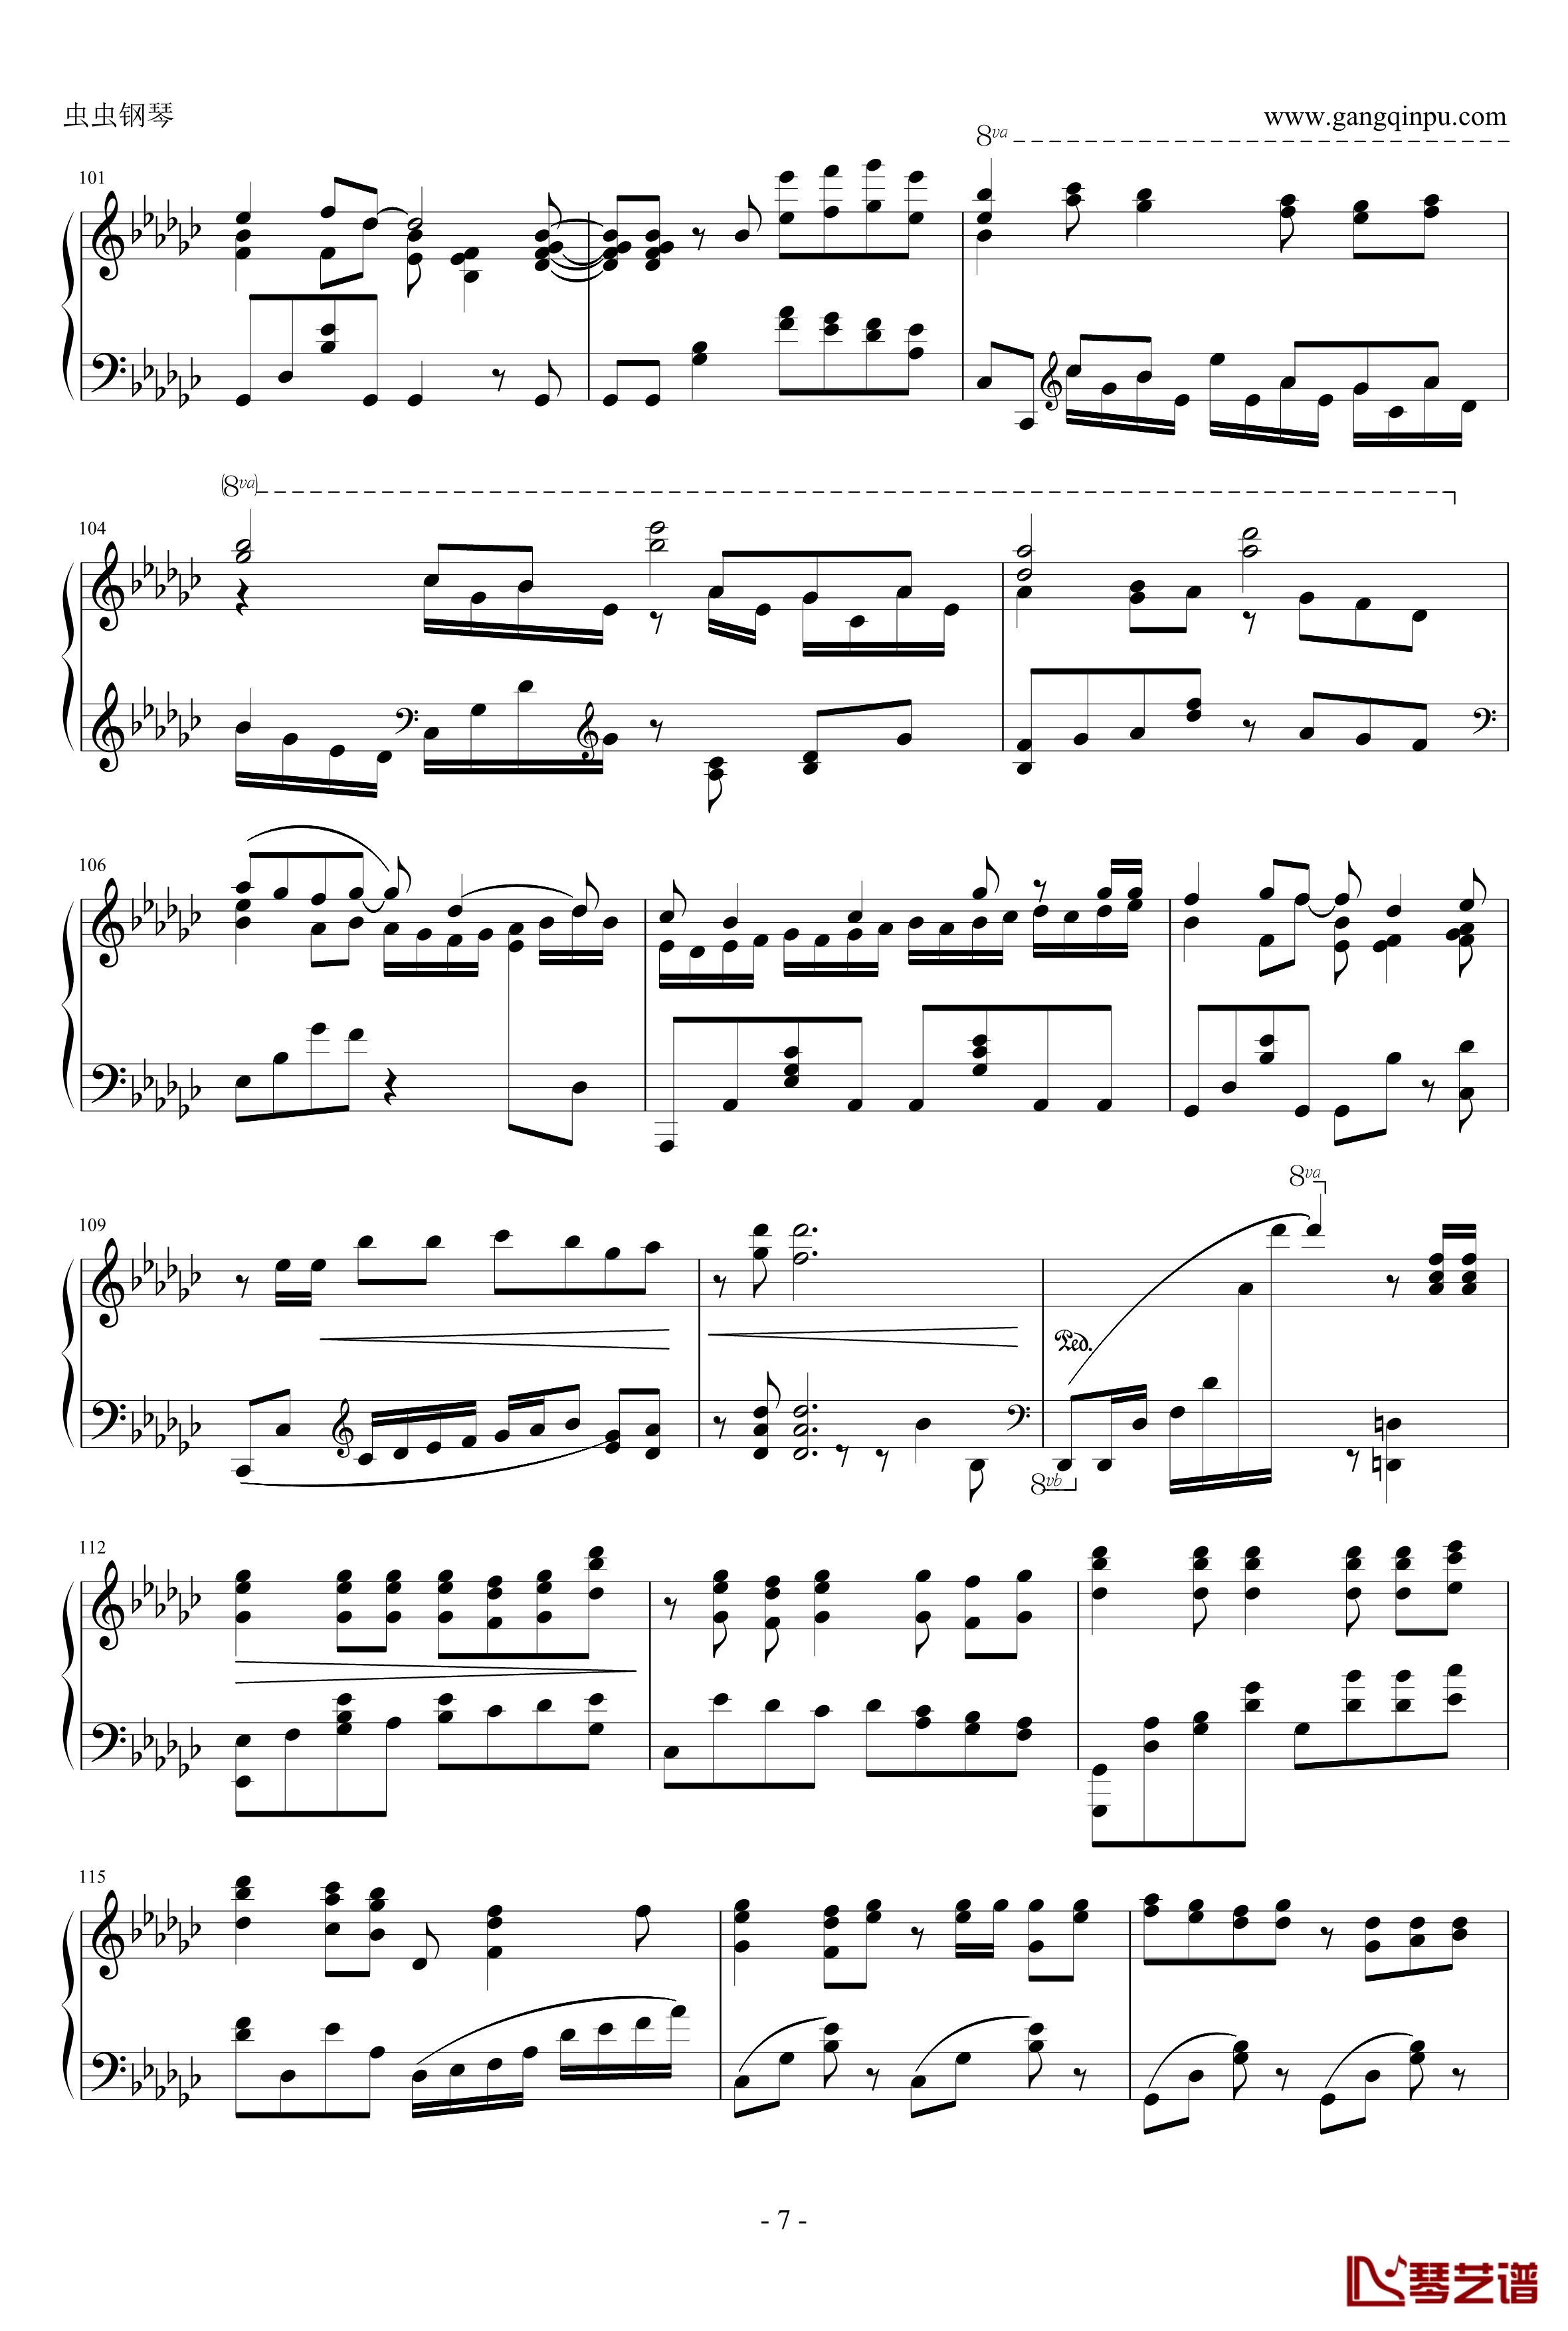 罗密欧与辛德瑞拉钢琴谱-初音ミク-doriko7